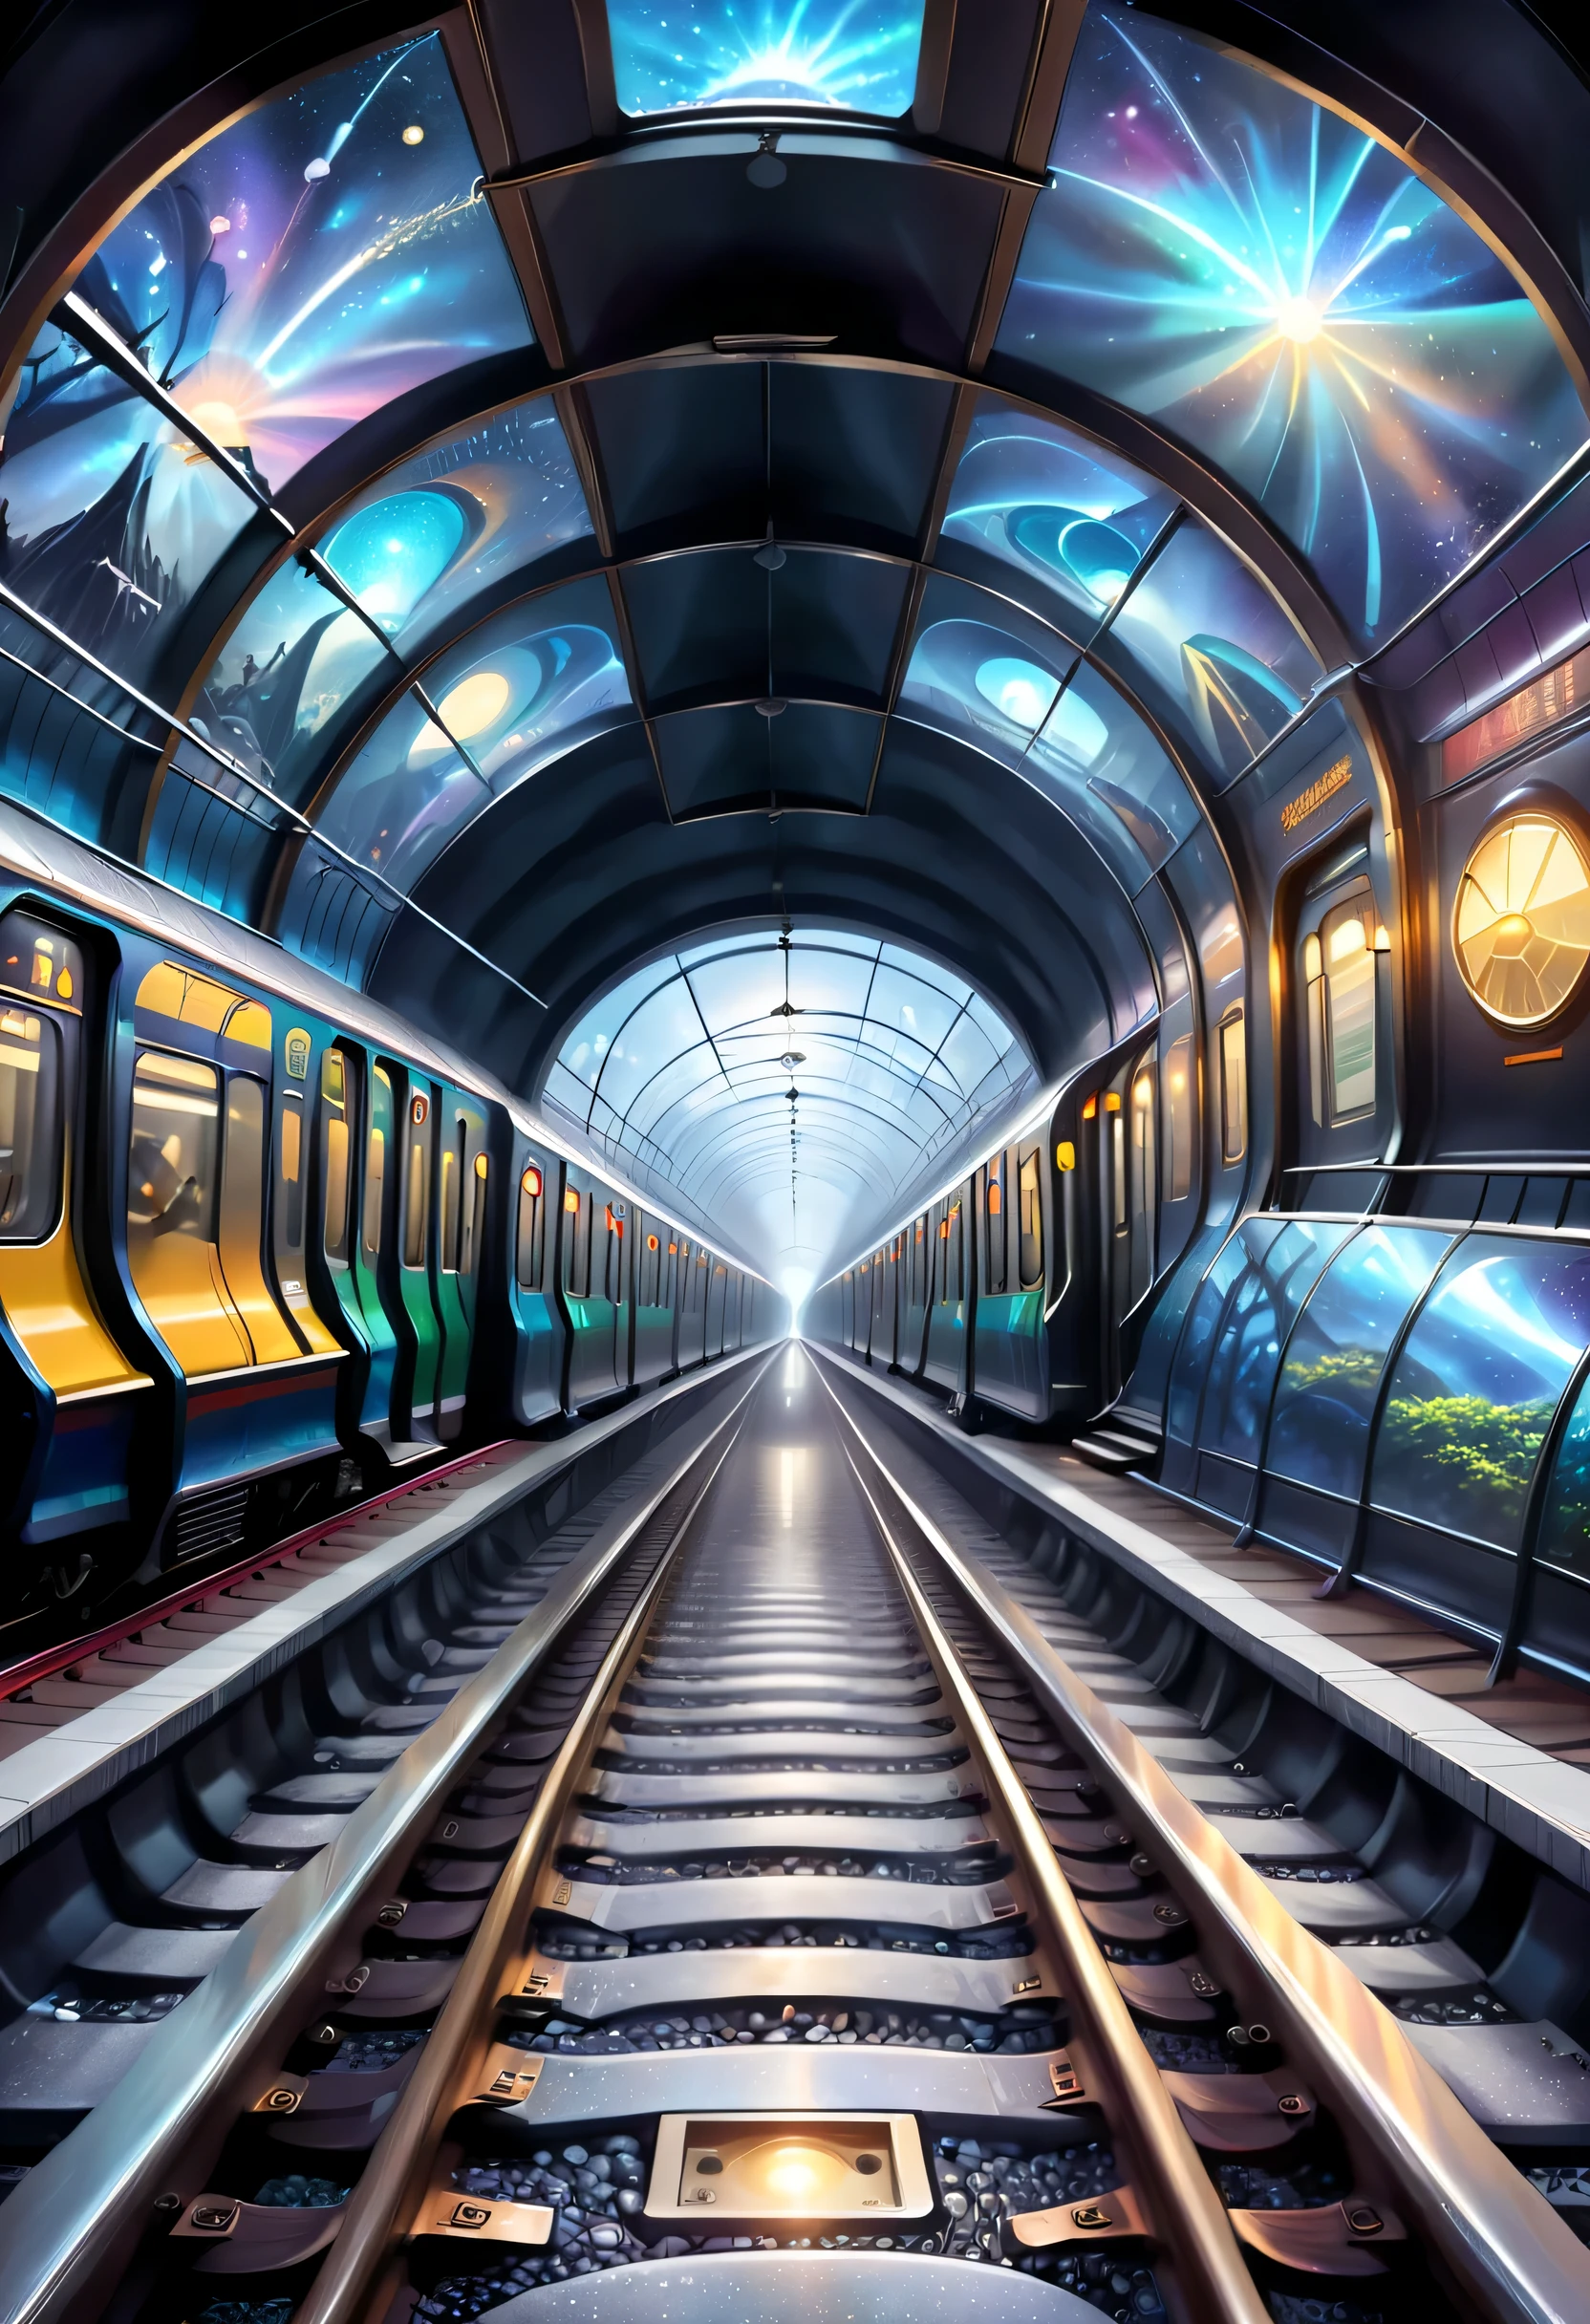 它描绘了地铁轨道与不同维度空间的连接。可以画一条地铁隧道，其中一个部分通向另一个维度的世界，插图可以展示奇特的景观、神秘的景象和来自不同维度的乘客。星空穹顶列车是正常世界和另一个维度之间的通道，呈现出一种神秘而迷人的氛围。